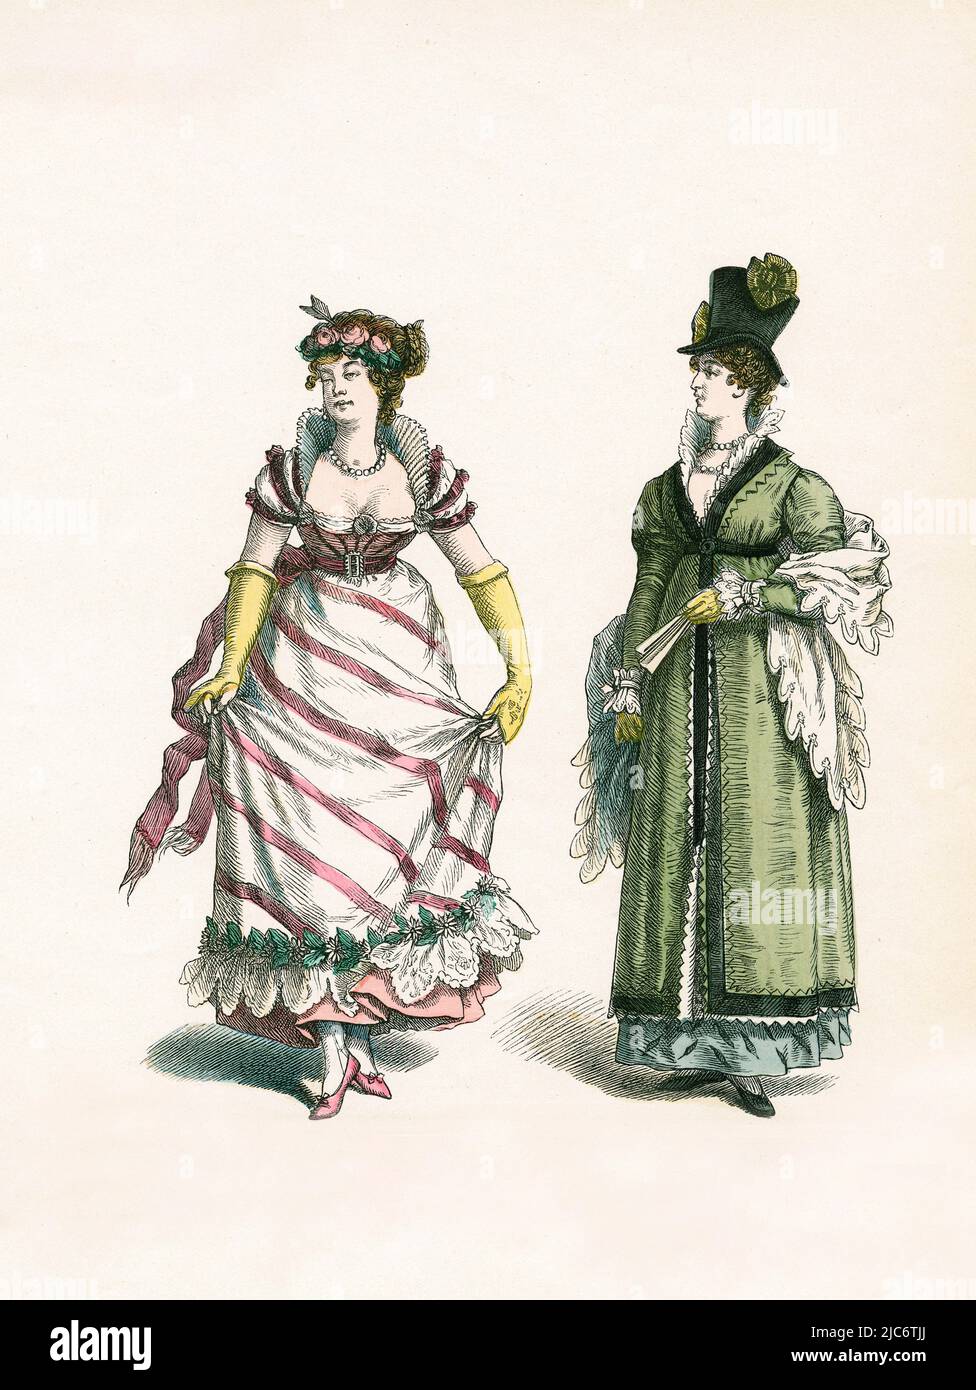 Lady in Ball Gown (1805), Lady with High Hat, Empire Style, inizio 19th secolo, Illustrazione, la Storia del Costume, Braun & Schneider, Monaco di Baviera, Germania, 1861-1880 Foto Stock